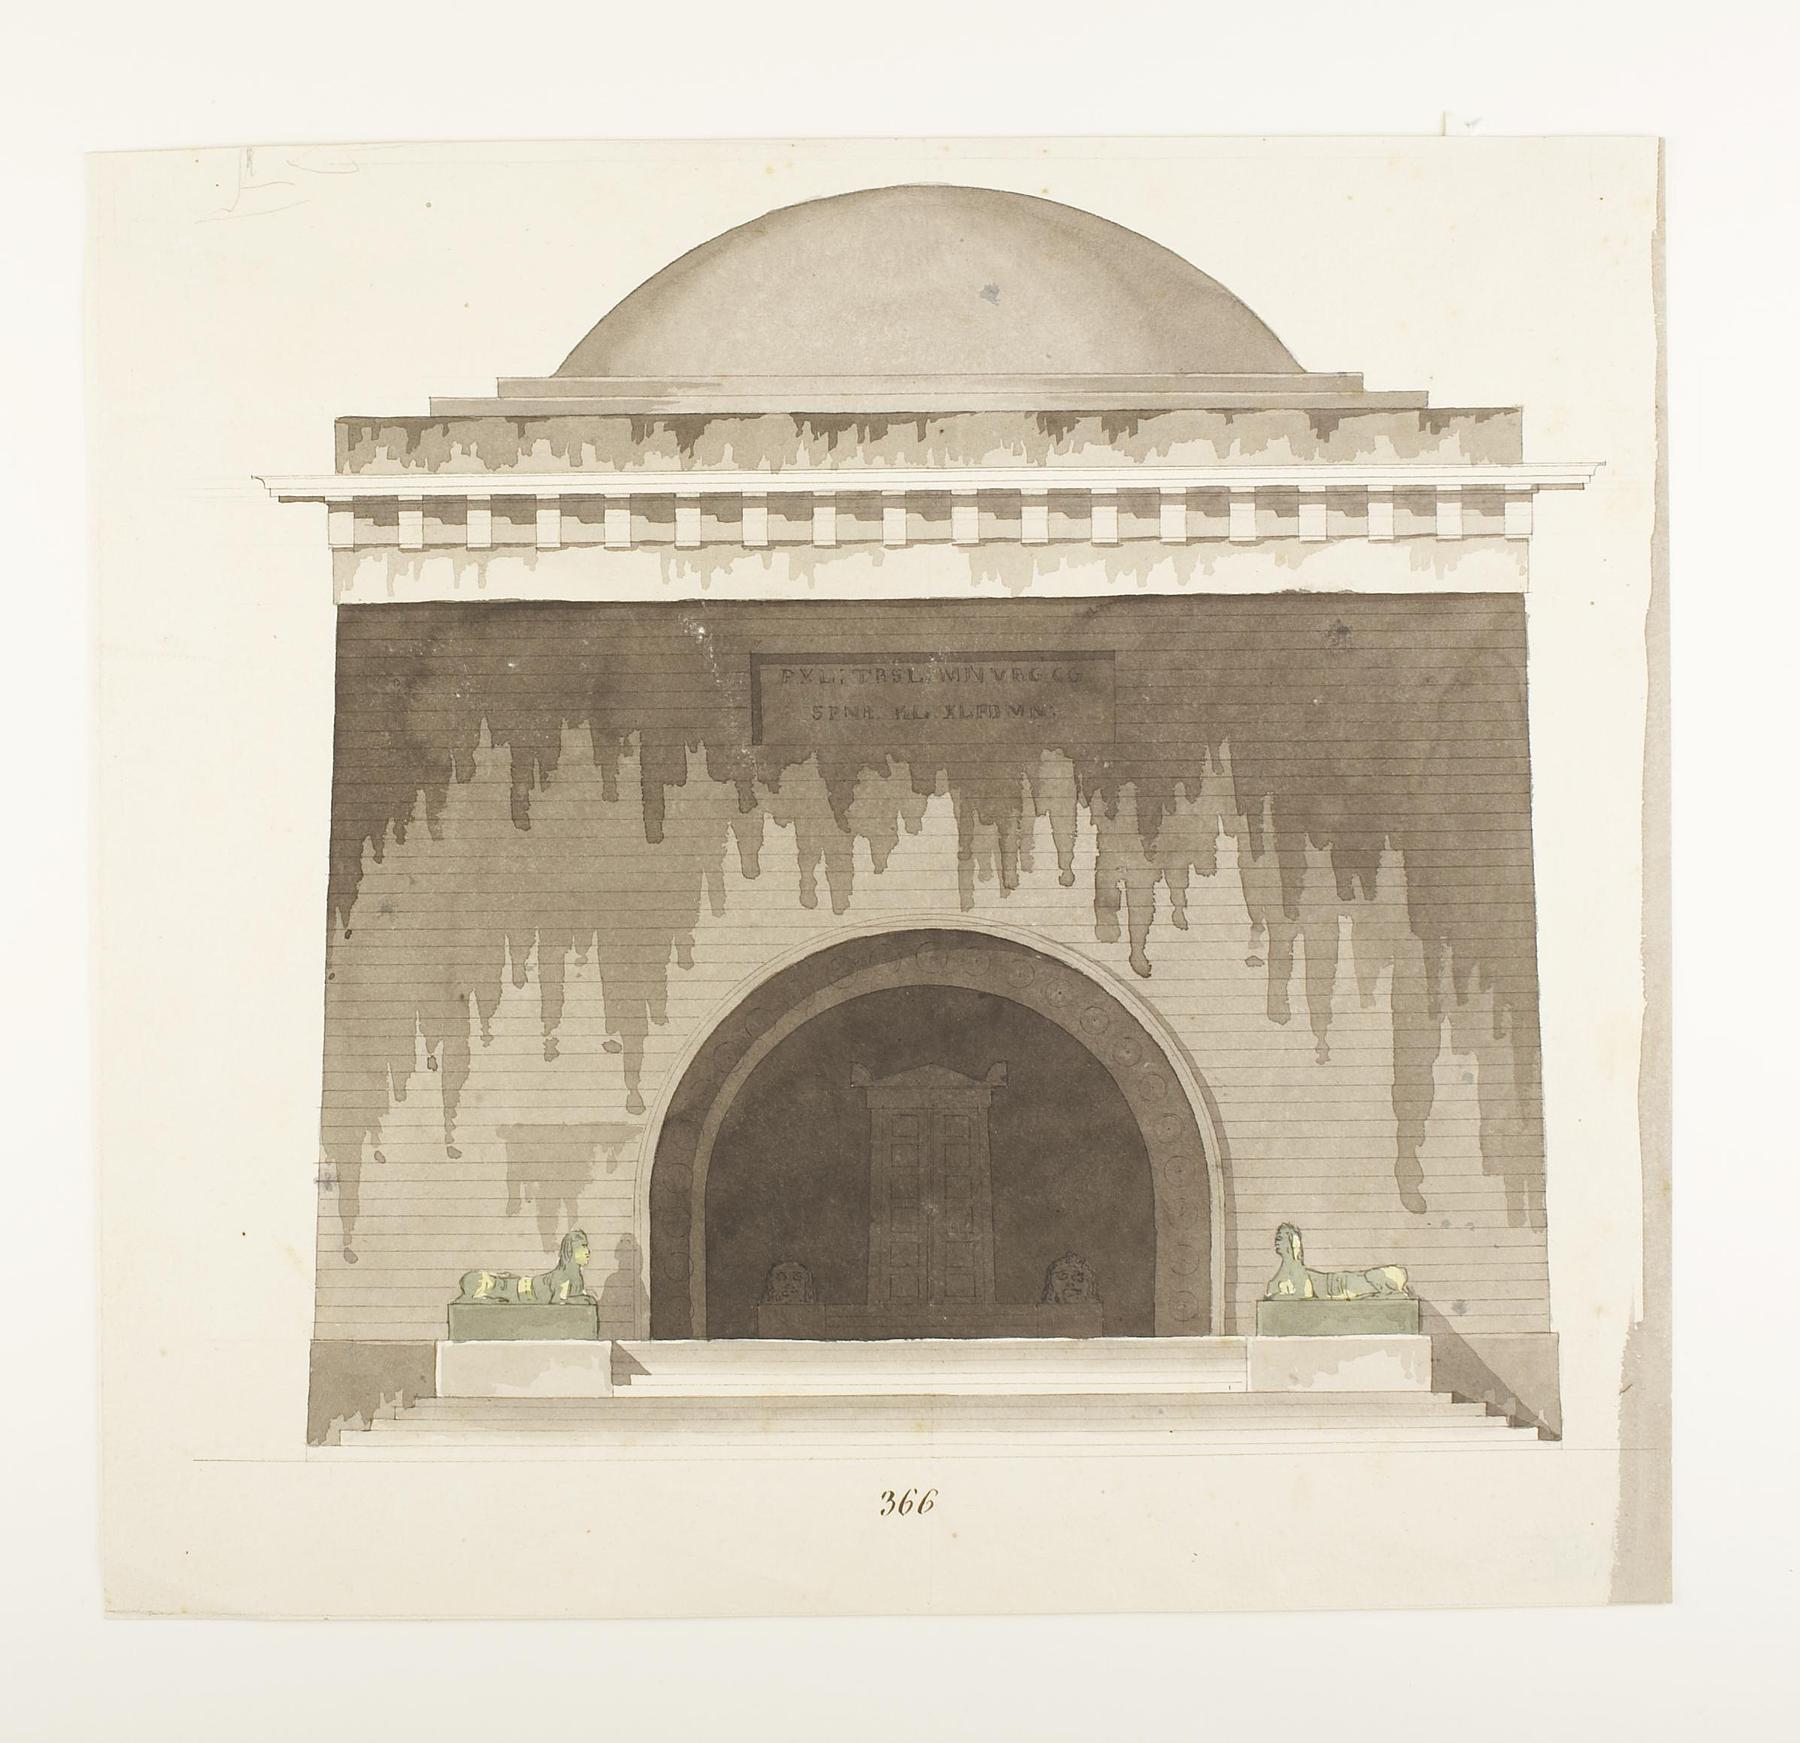 Udkast til et mausoleum eller gravkapel i antik stil, opstalt af facade, D854